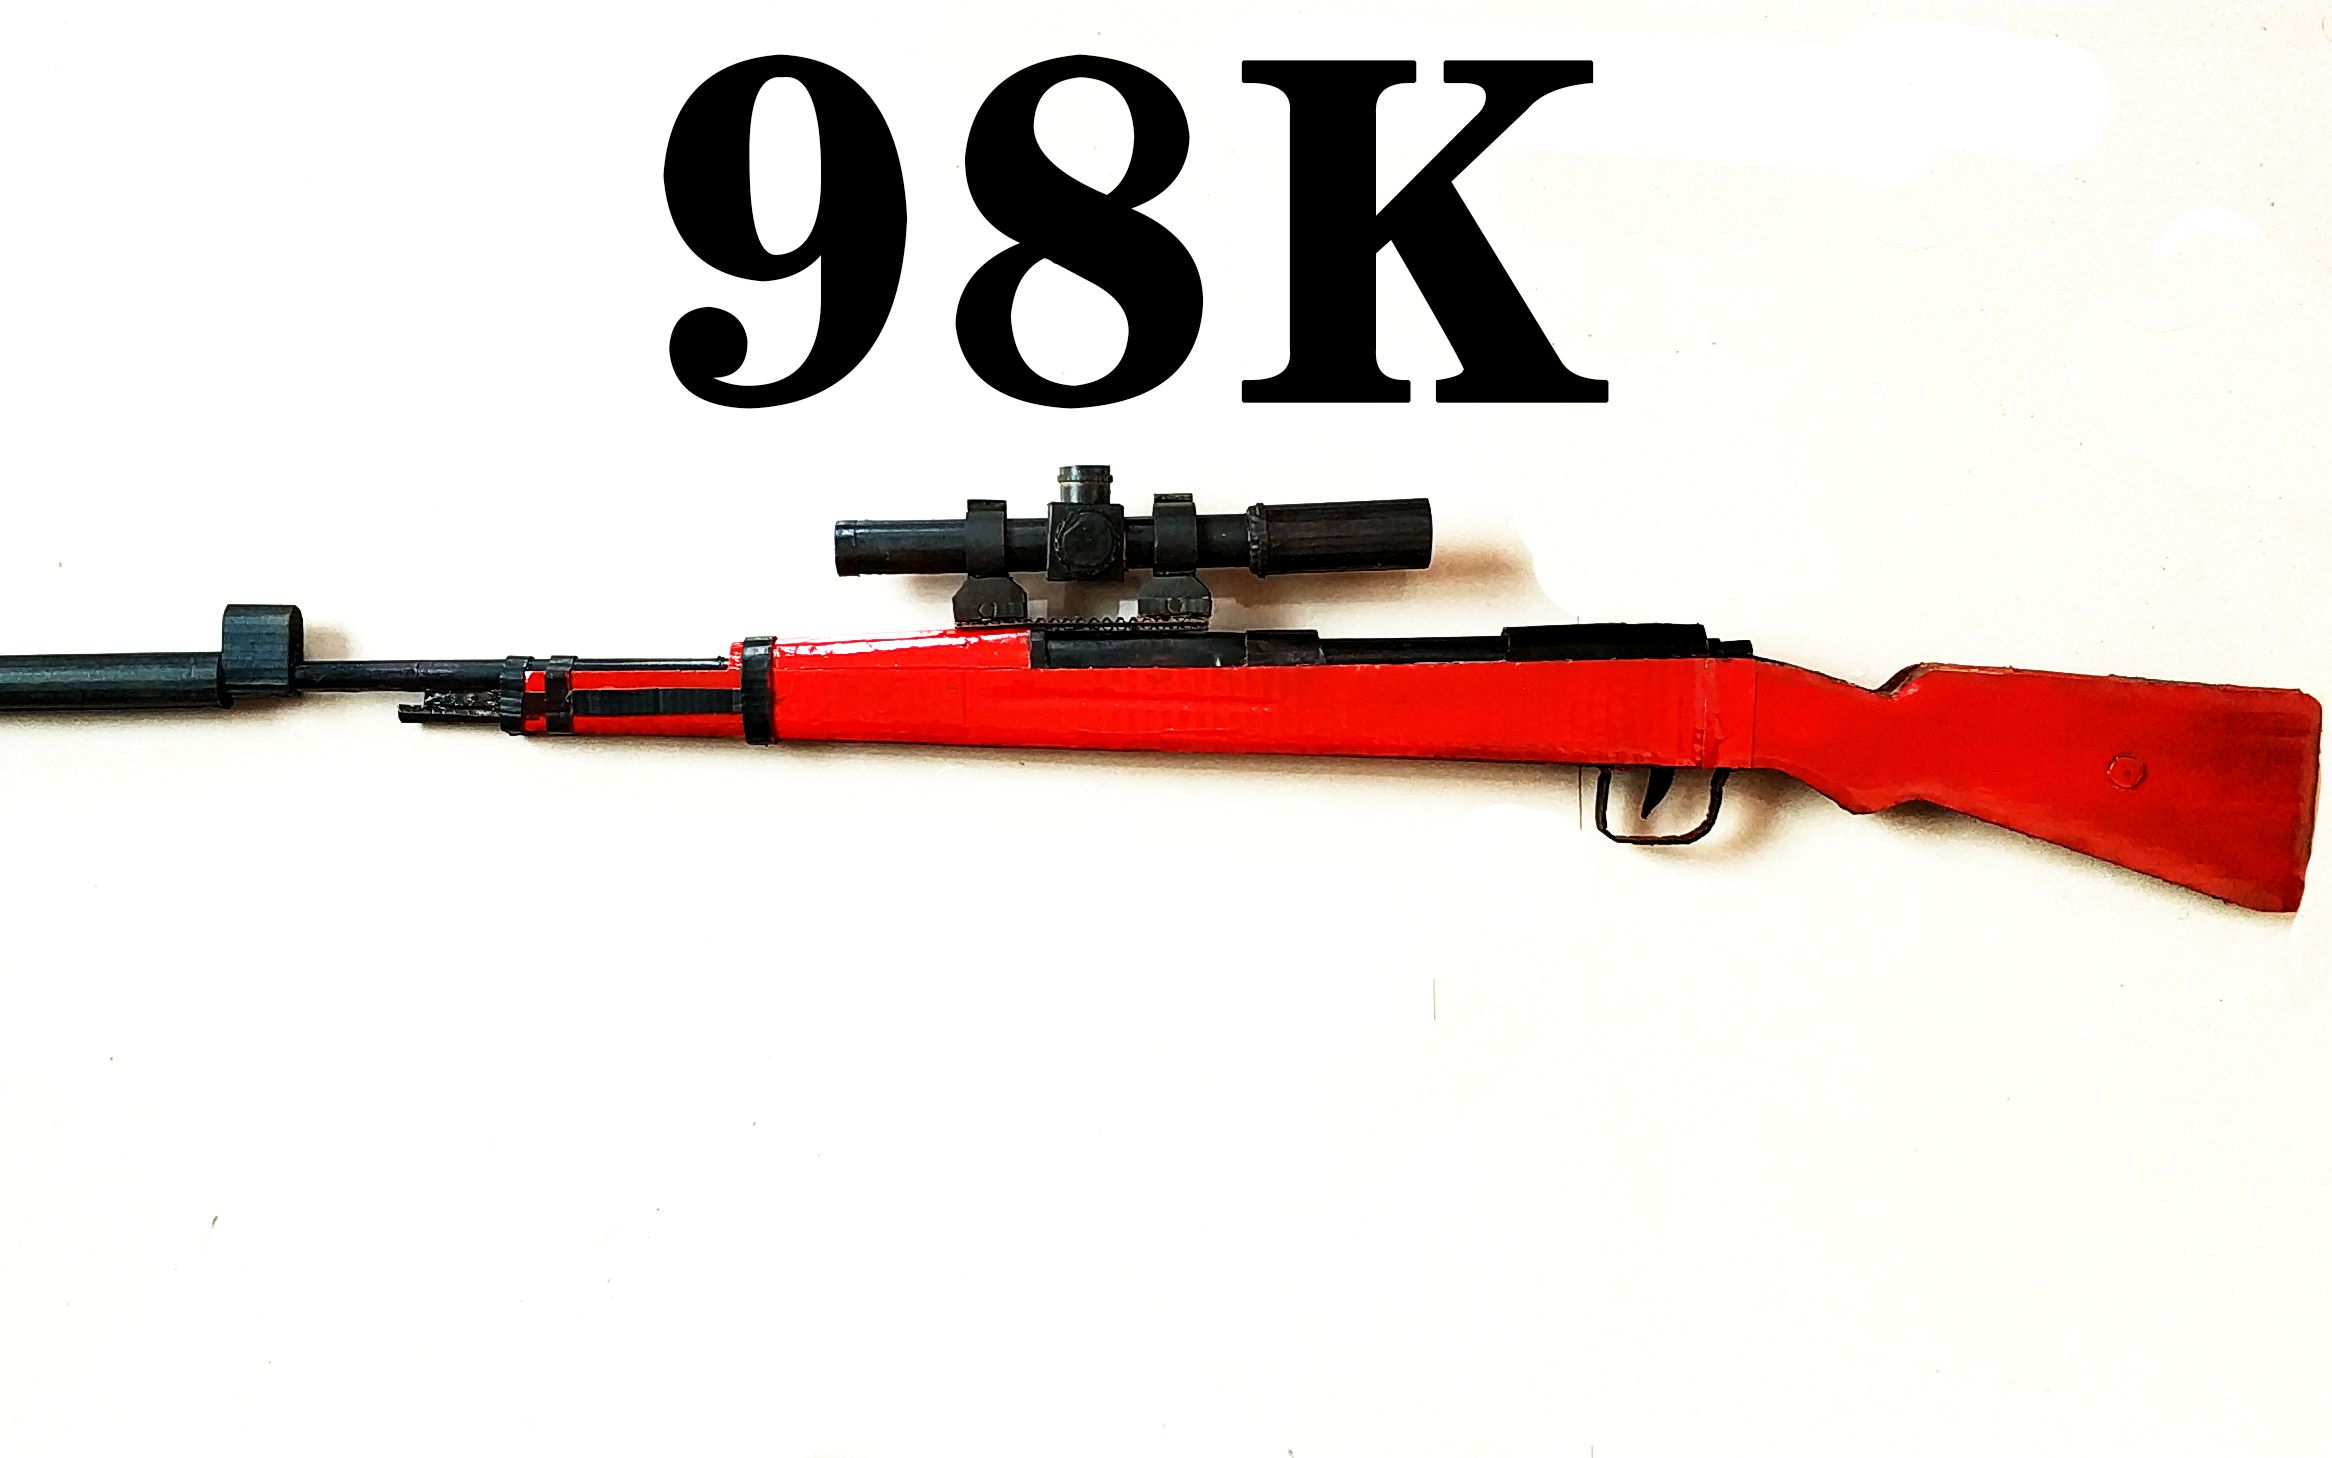 用纸板制作刺激战场98k狙击枪玩具模型喜欢吃鸡游戏的看过来